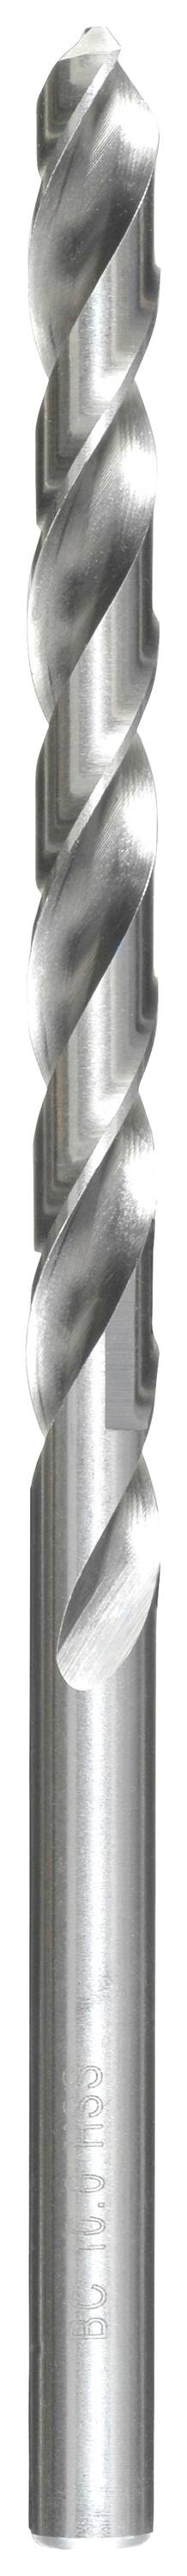 KWB 217050 HSS Spiralbohrer 1 Stück 5 mm Gesamtlänge 132 mm DIN 340 Zahnkranzbohrfutter 1 St.